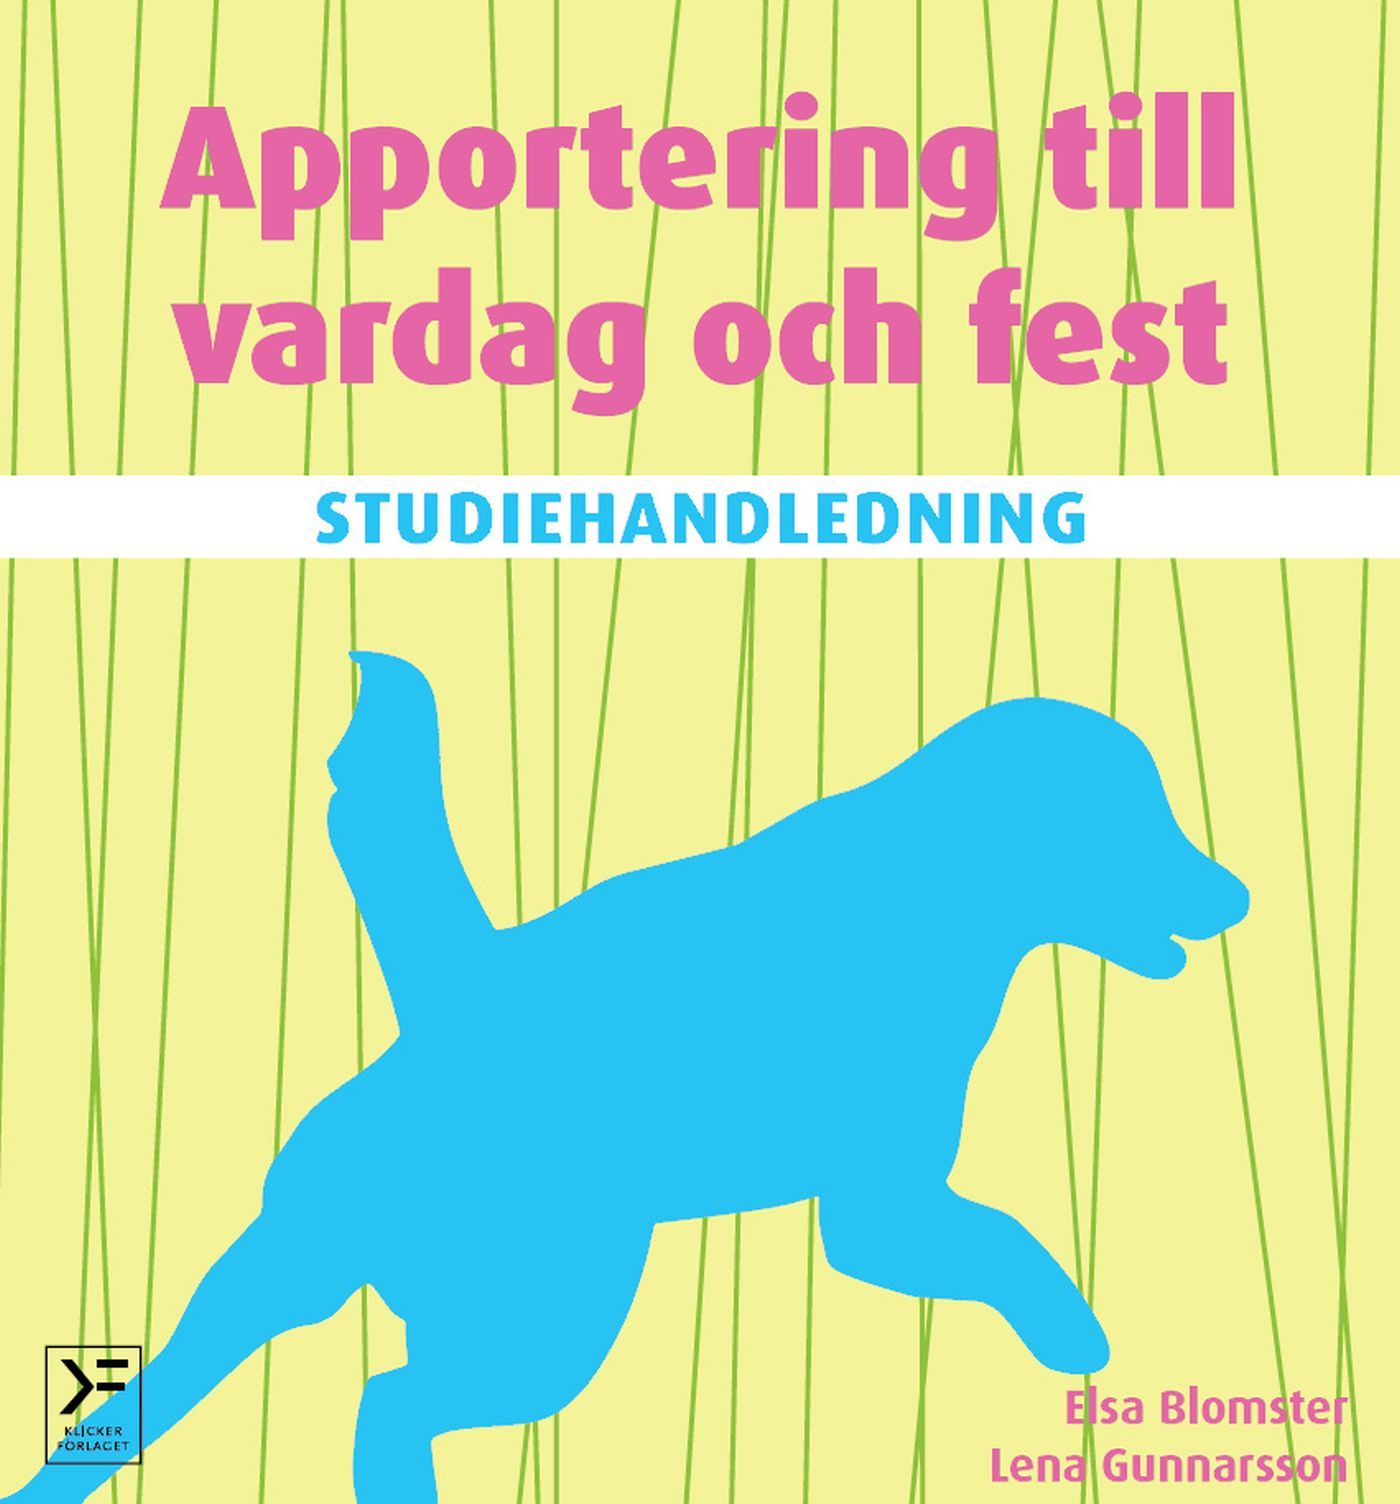 Studiehandledning Apportering till vardag och fest, eBook by Elsa Blomster, Lena Gunnarsson